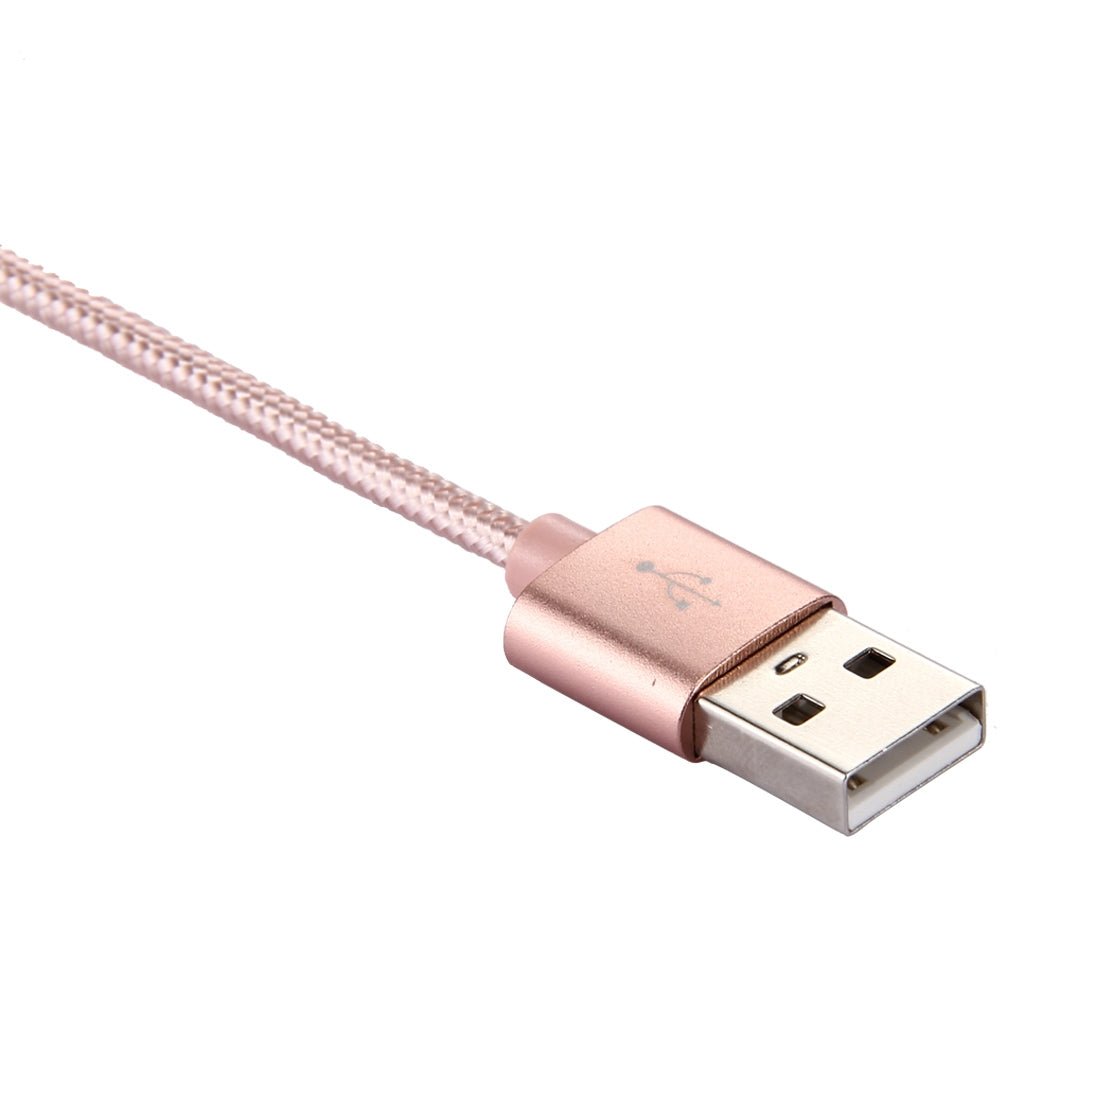 USB TypC Schnell Ladekabel Sync Kabel rosegold 1m - Calitronshop.com